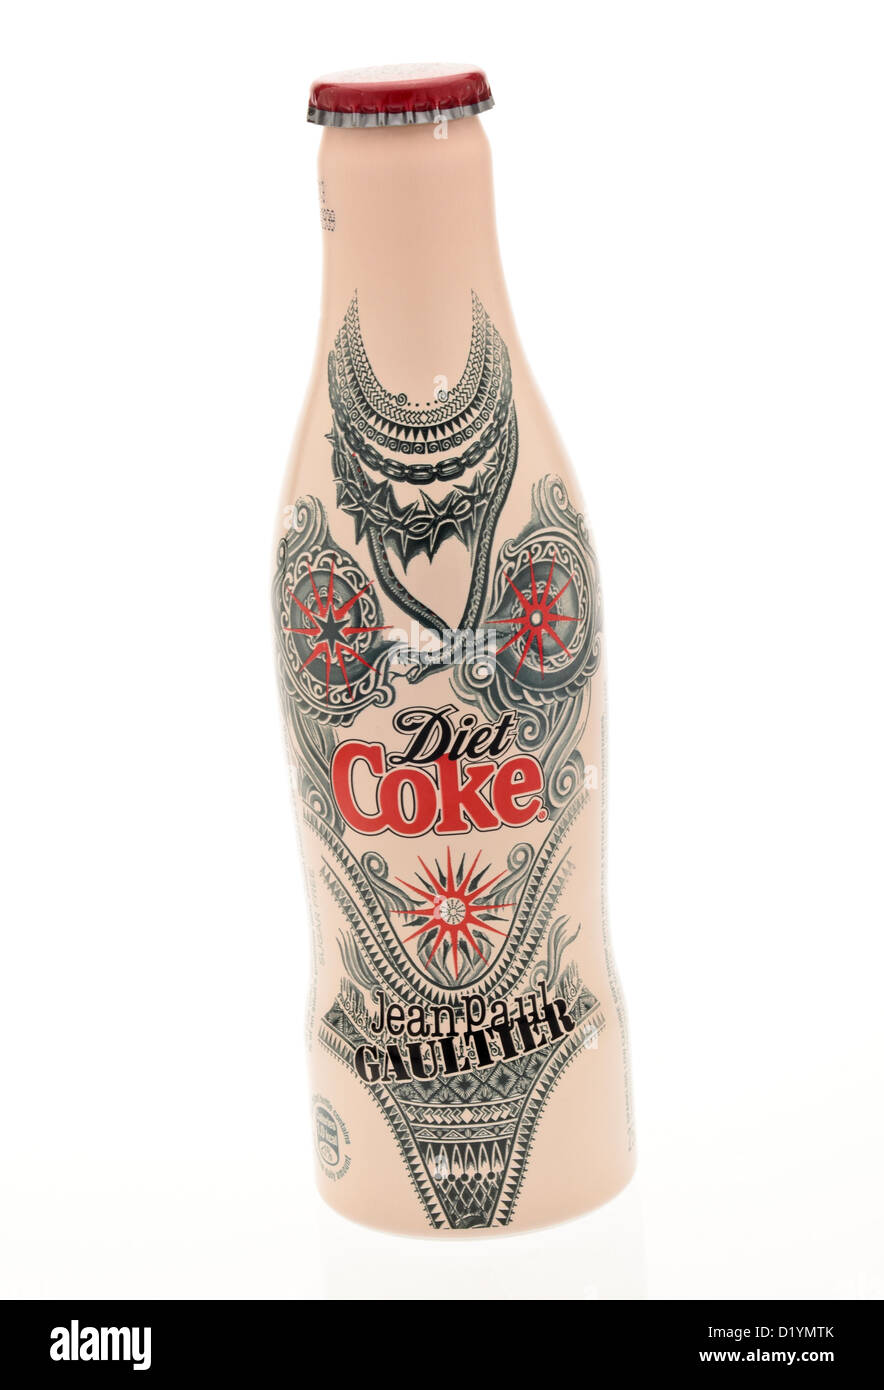 Bottle of Diet Coke designed by Jean Paul Gaultier. Stock Photo